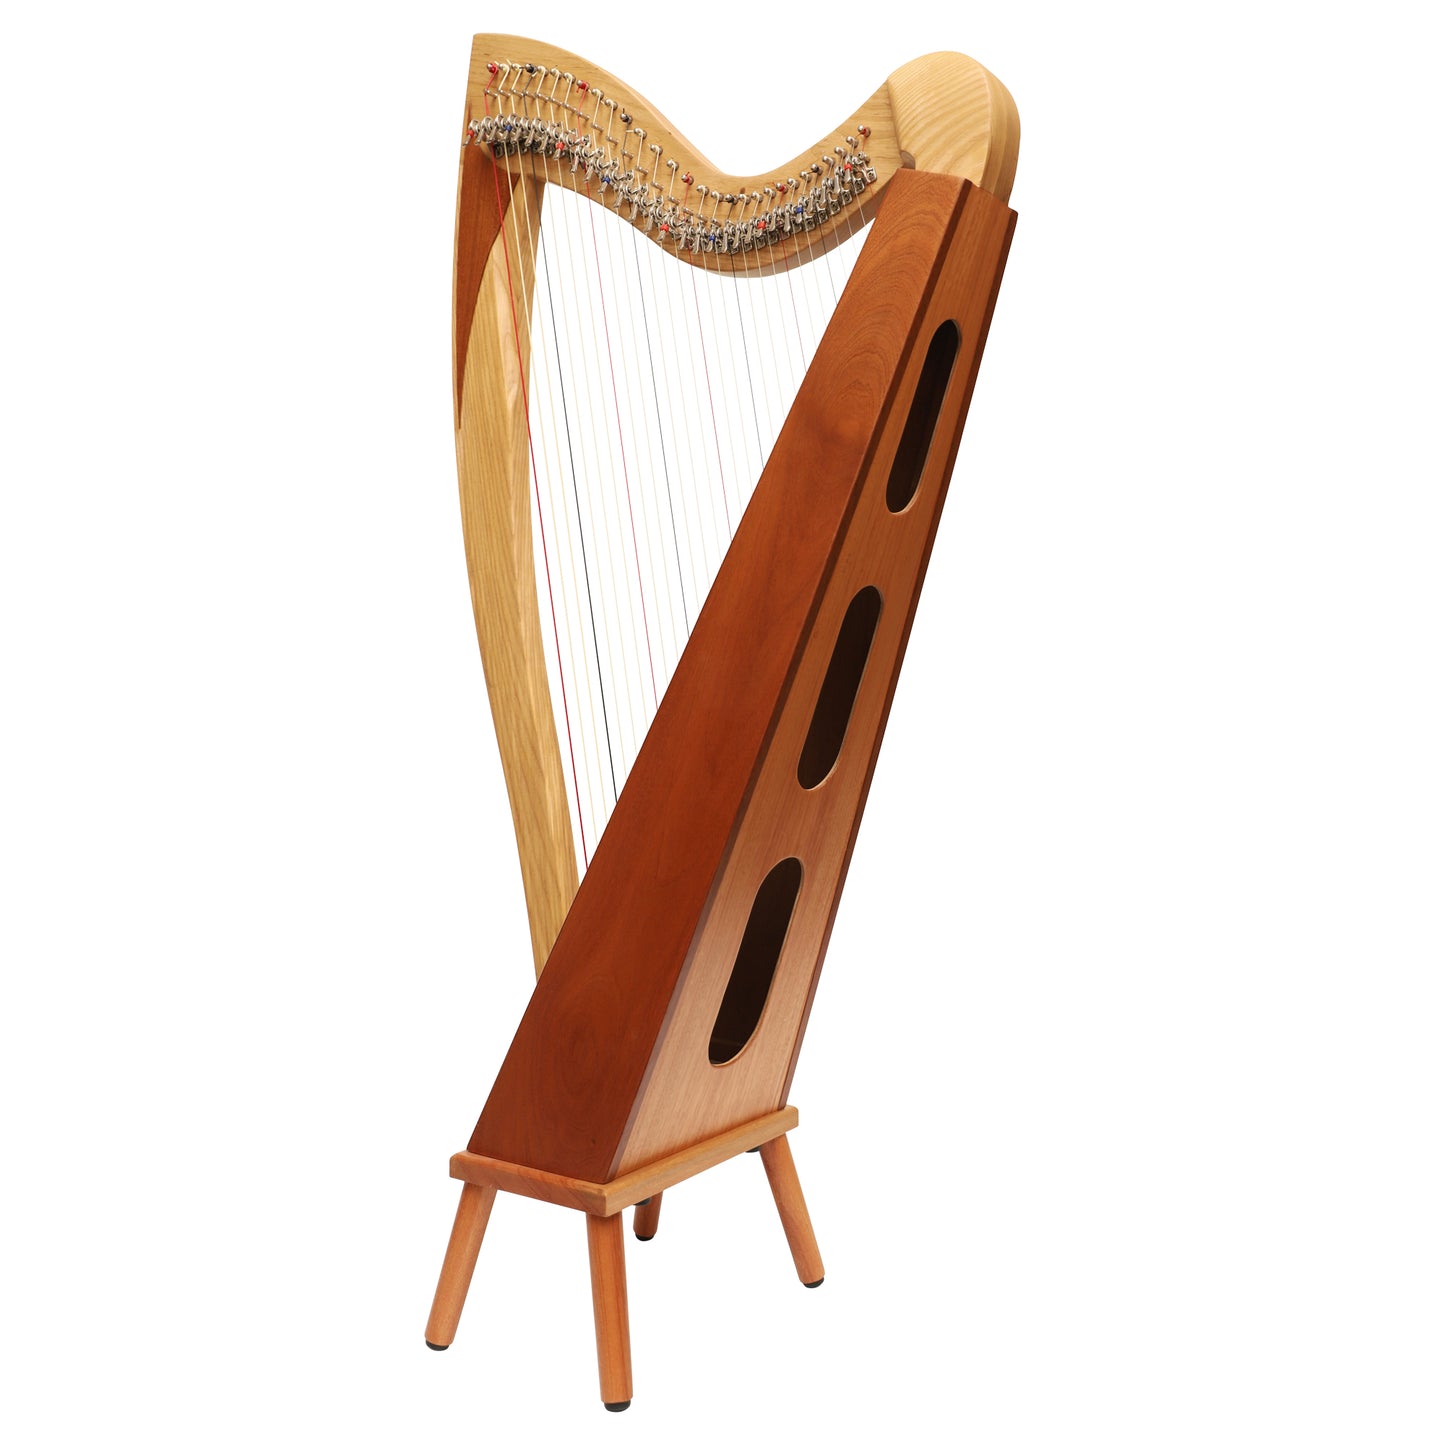 McHugh Atlas Harp 29 String Ash and Mahogany Squareback